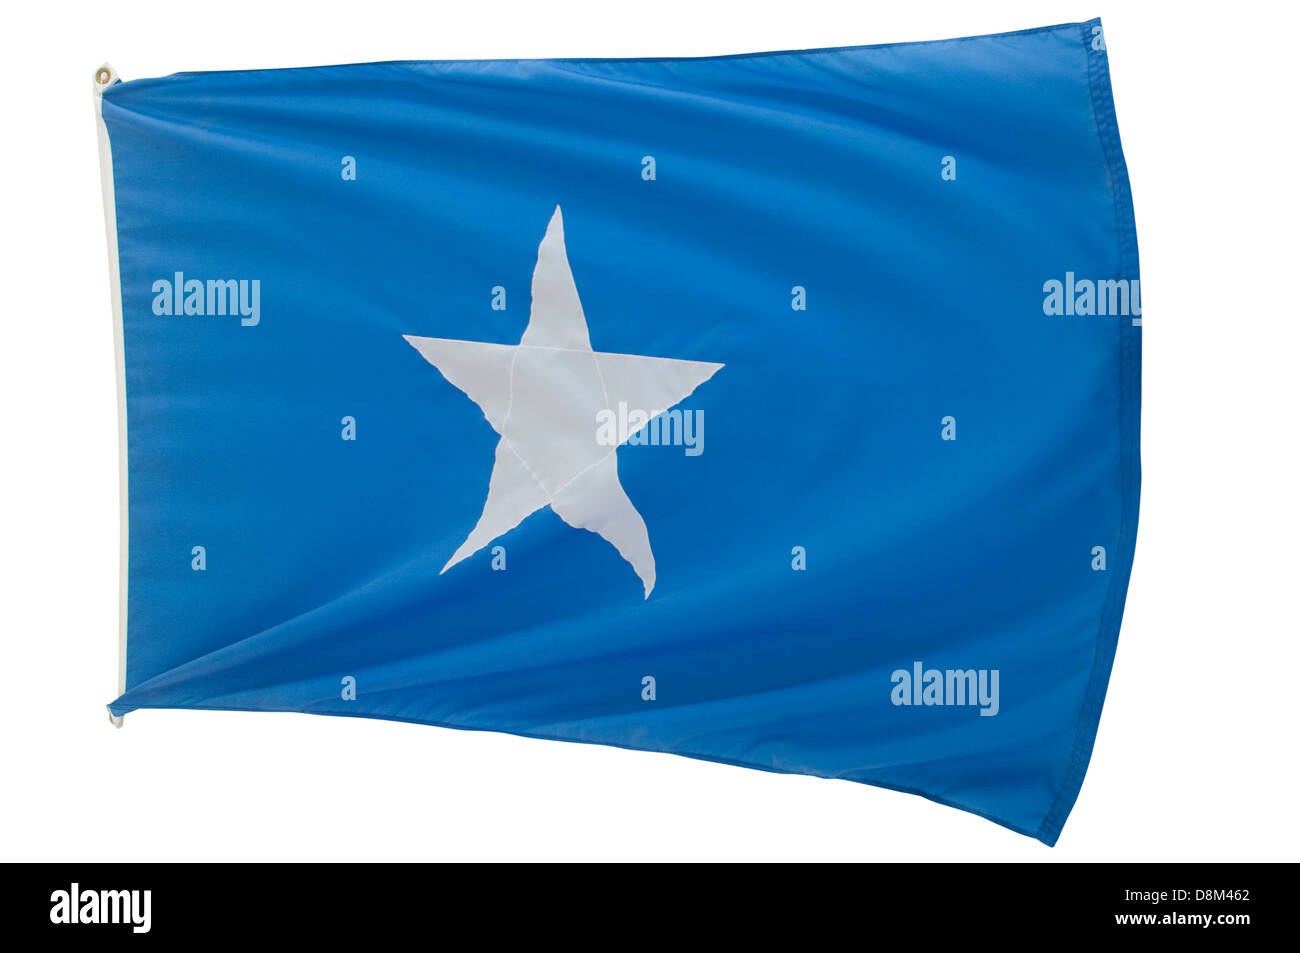 Bonnie Bandiera Blu della separazione membri, Fort Pillow parco statale, Tennessee. Fotografia digitale Foto Stock